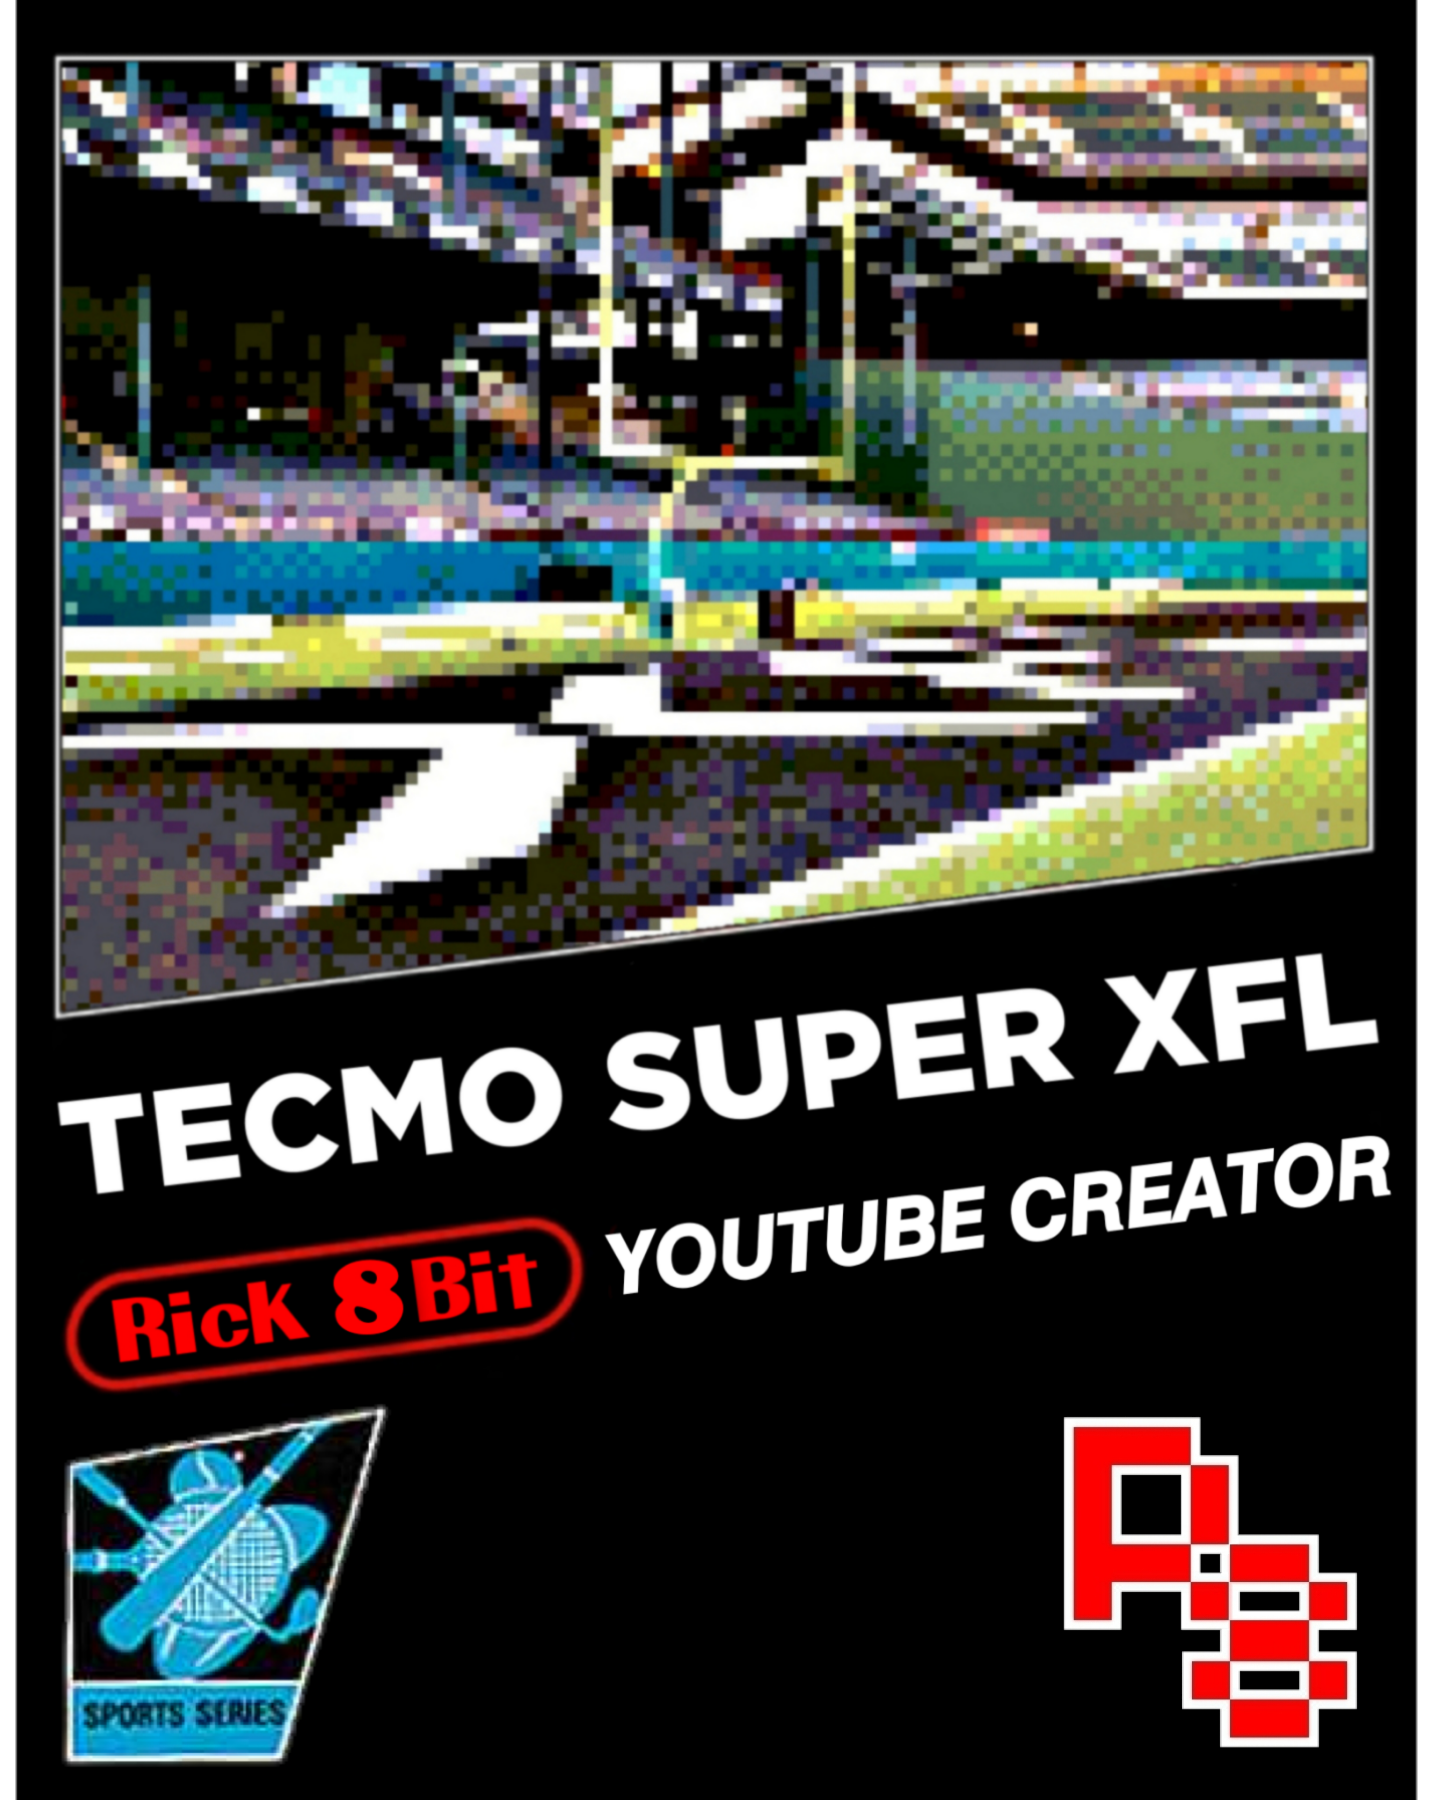 Tecmo Super XFL